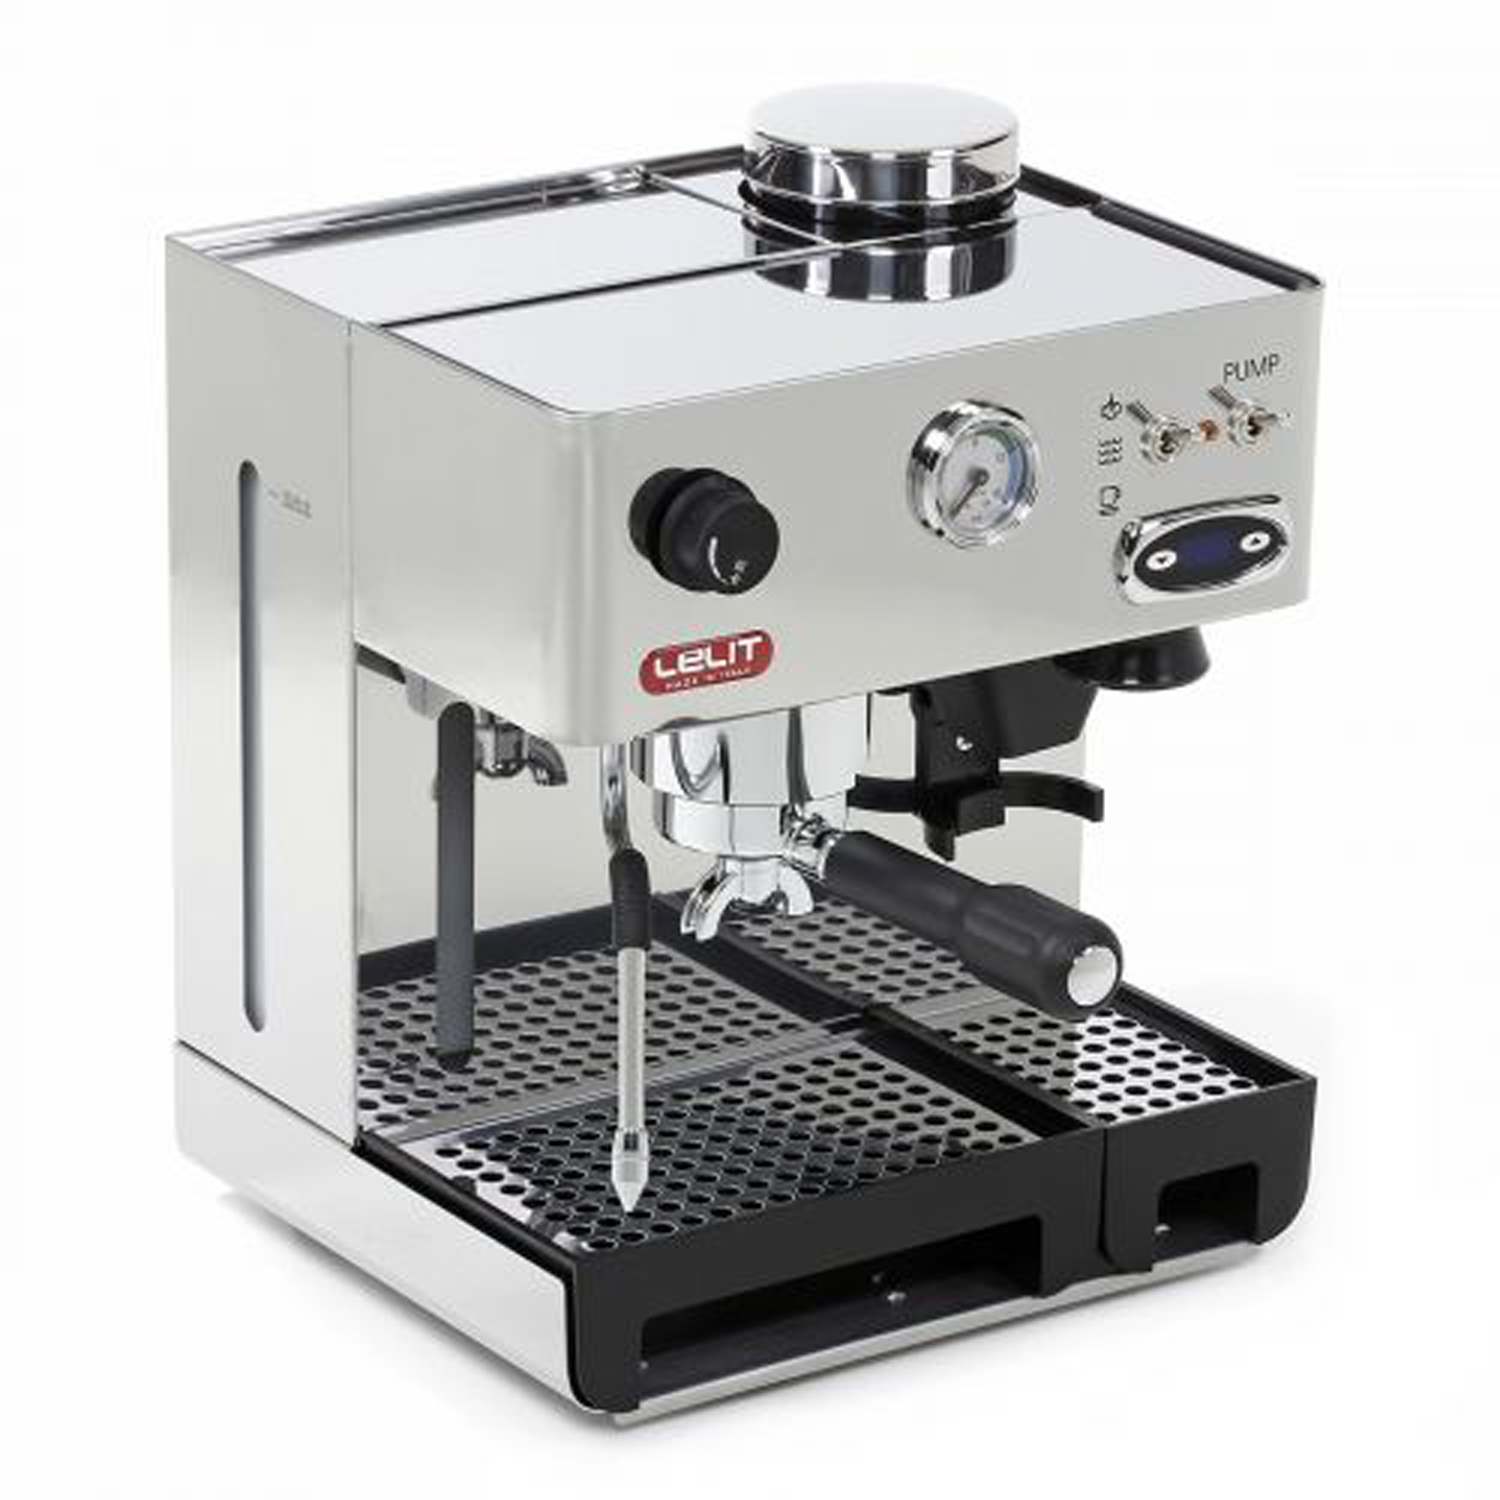 LELIT PL42 Edelstahl Espressomaschine TEMD